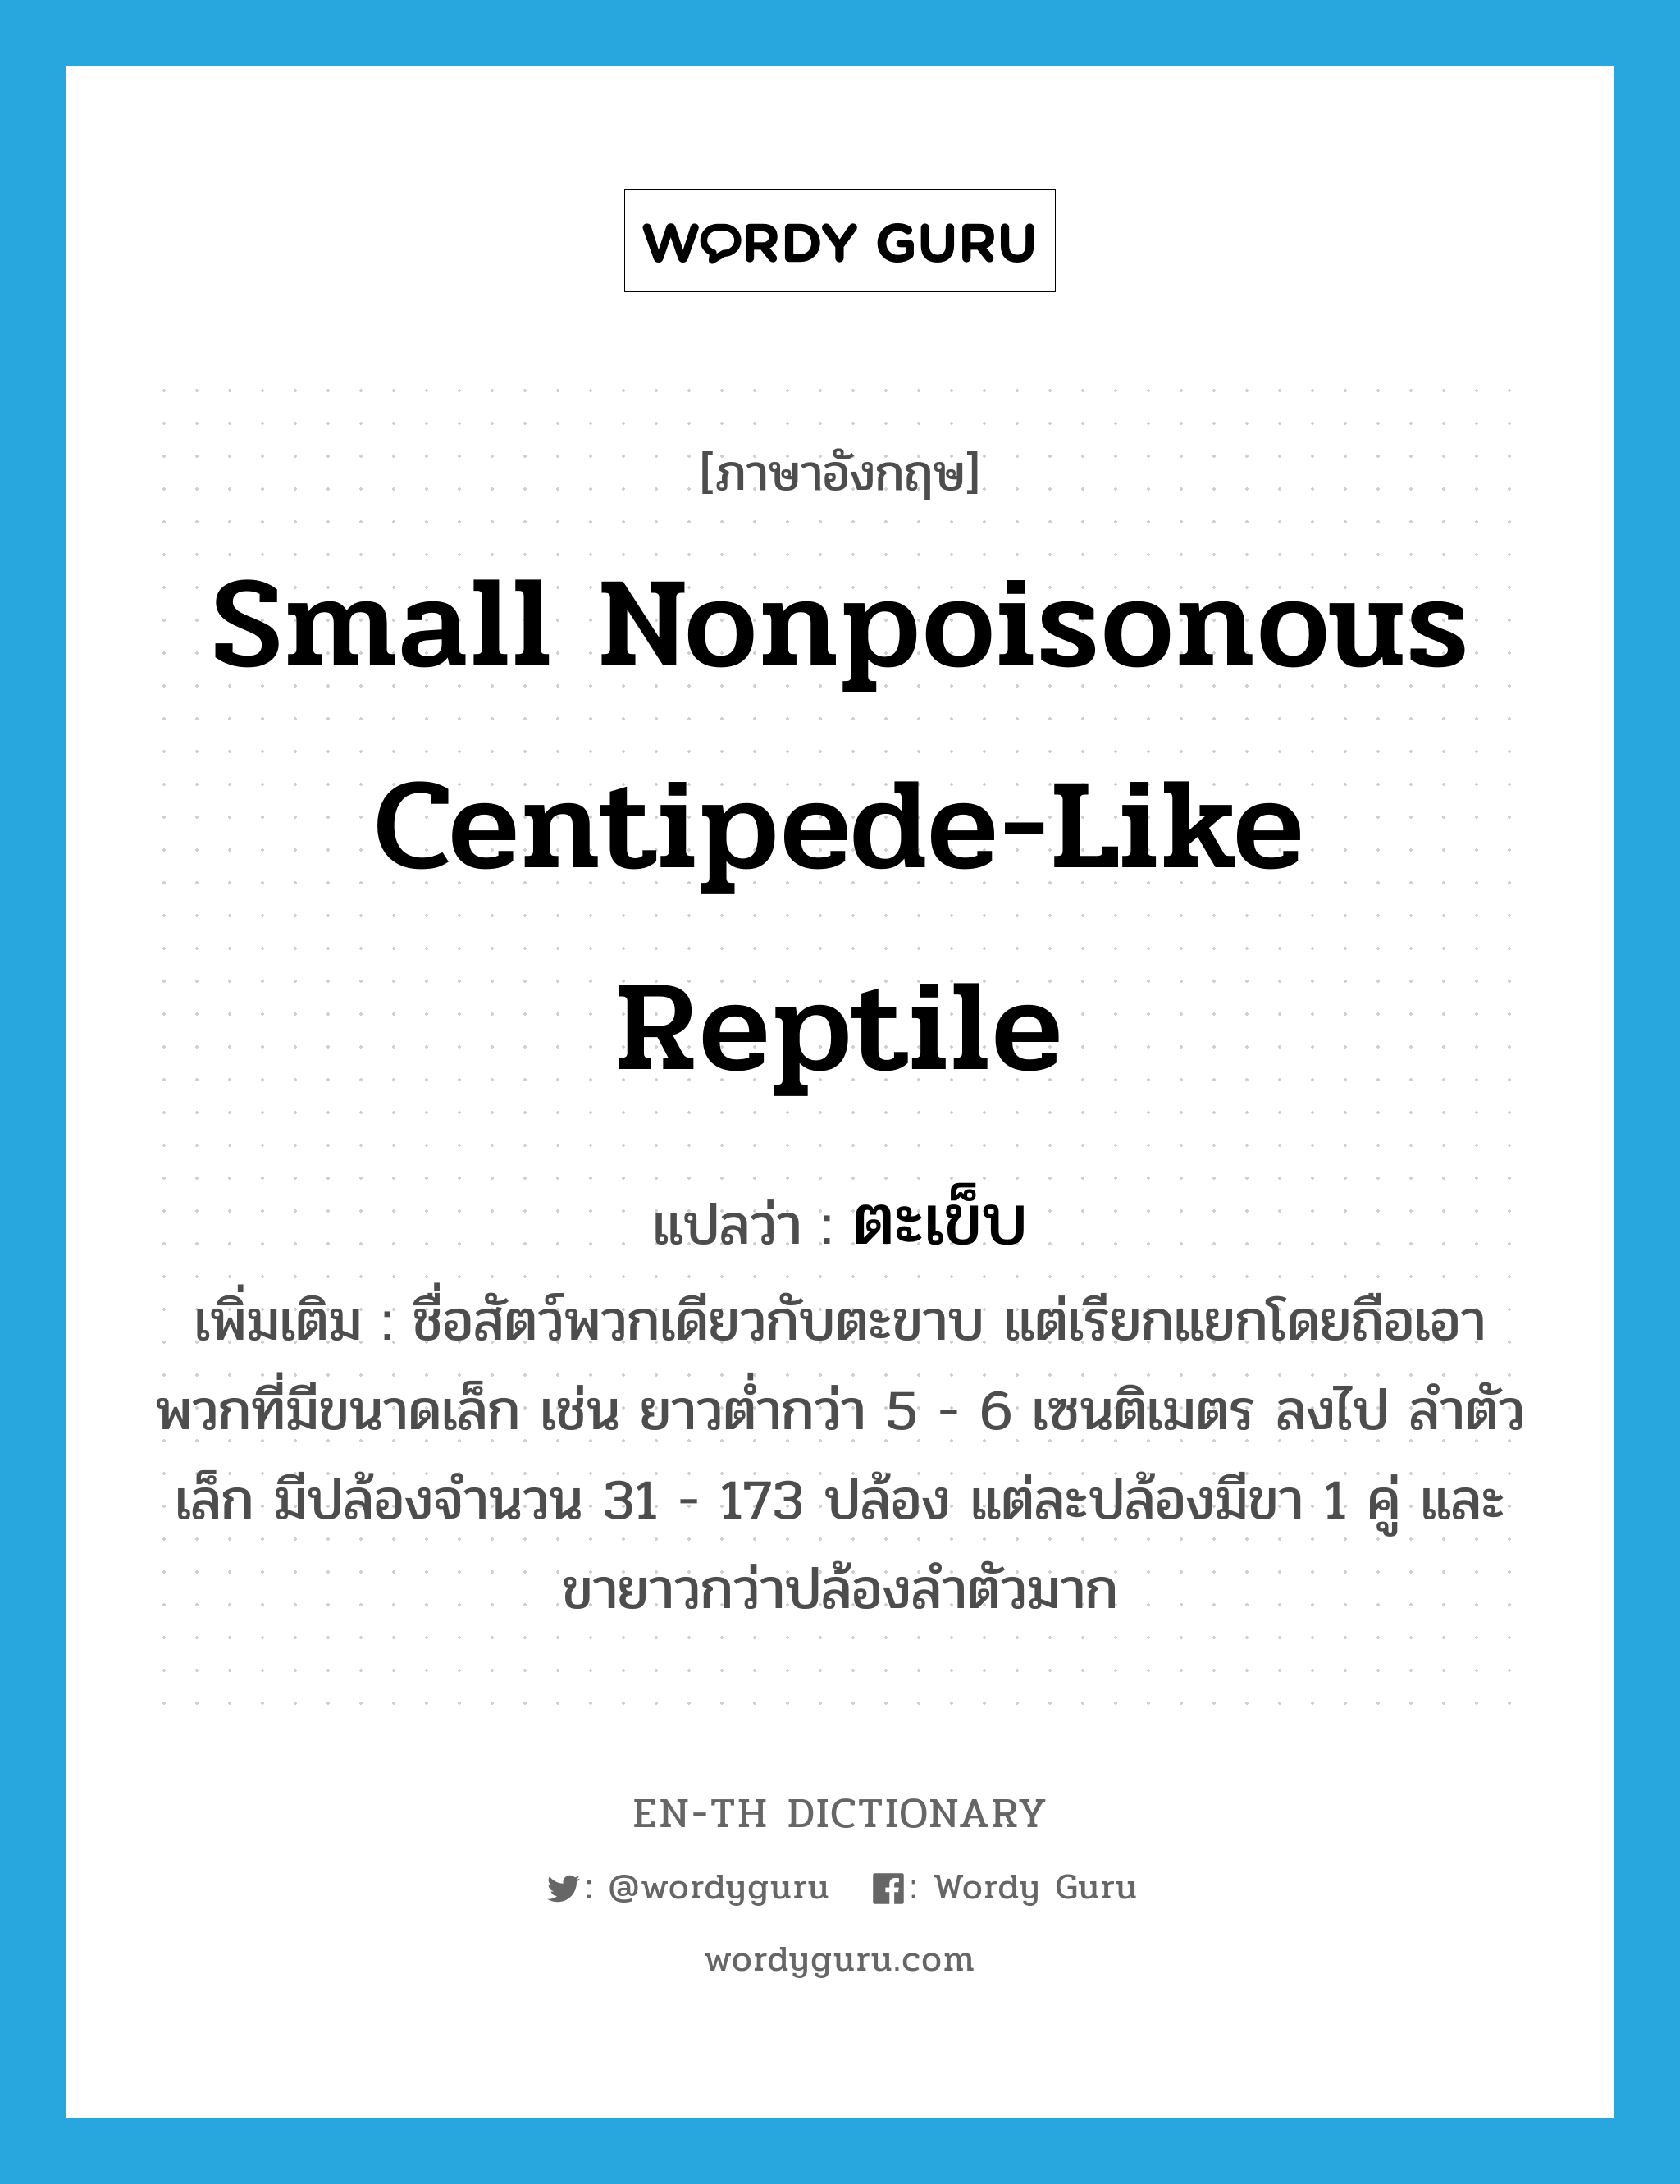 ตะเข็บ ภาษาอังกฤษ?, คำศัพท์ภาษาอังกฤษ ตะเข็บ แปลว่า small nonpoisonous centipede-like reptile ประเภท N เพิ่มเติม ชื่อสัตว์พวกเดียวกับตะขาบ แต่เรียกแยกโดยถือเอาพวกที่มีขนาดเล็ก เช่น ยาวต่ำกว่า 5 - 6 เซนติเมตร ลงไป ลำตัวเล็ก มีปล้องจำนวน 31 - 173 ปล้อง แต่ละปล้องมีขา 1 คู่ และขายาวกว่าปล้องลำตัวมาก หมวด N